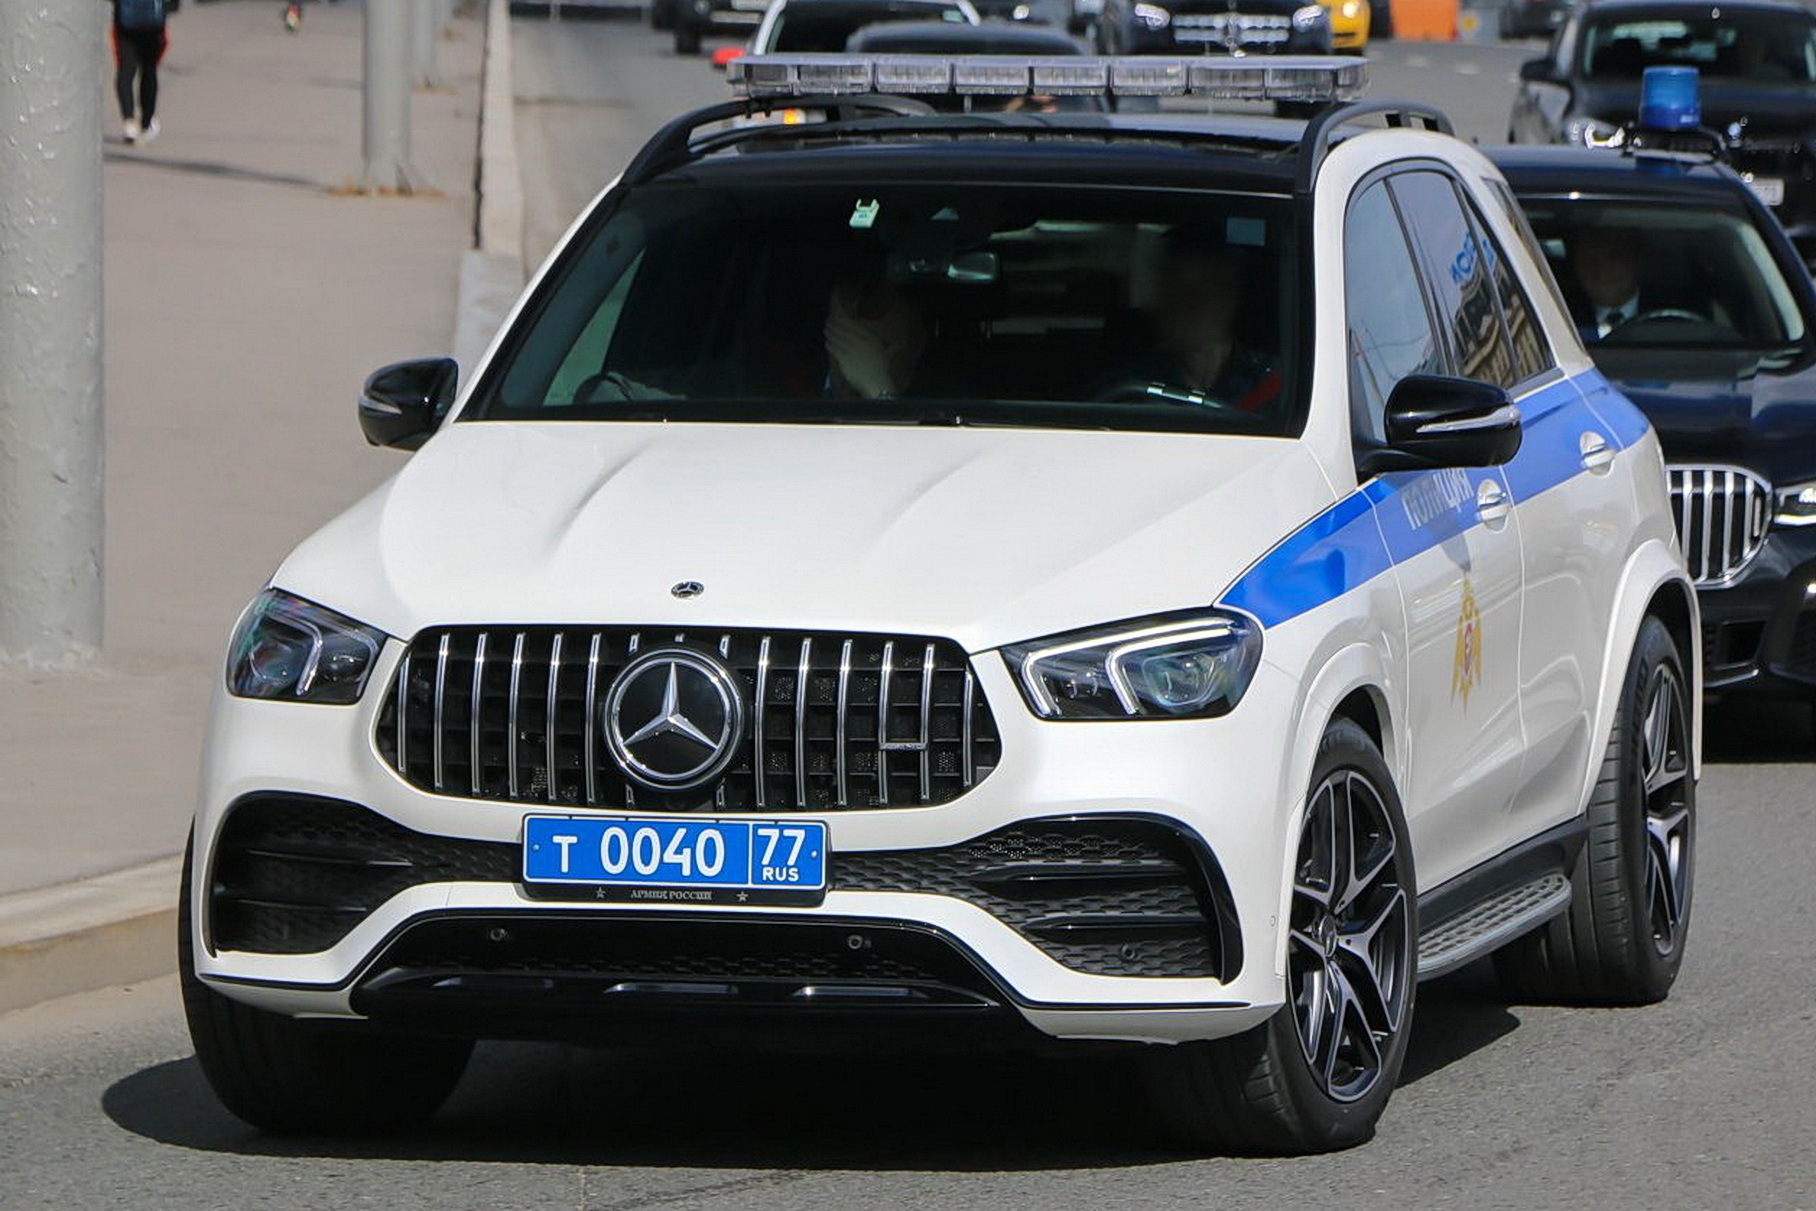 У московской полиции появился новый суперкроссовер Mercedes-AMG